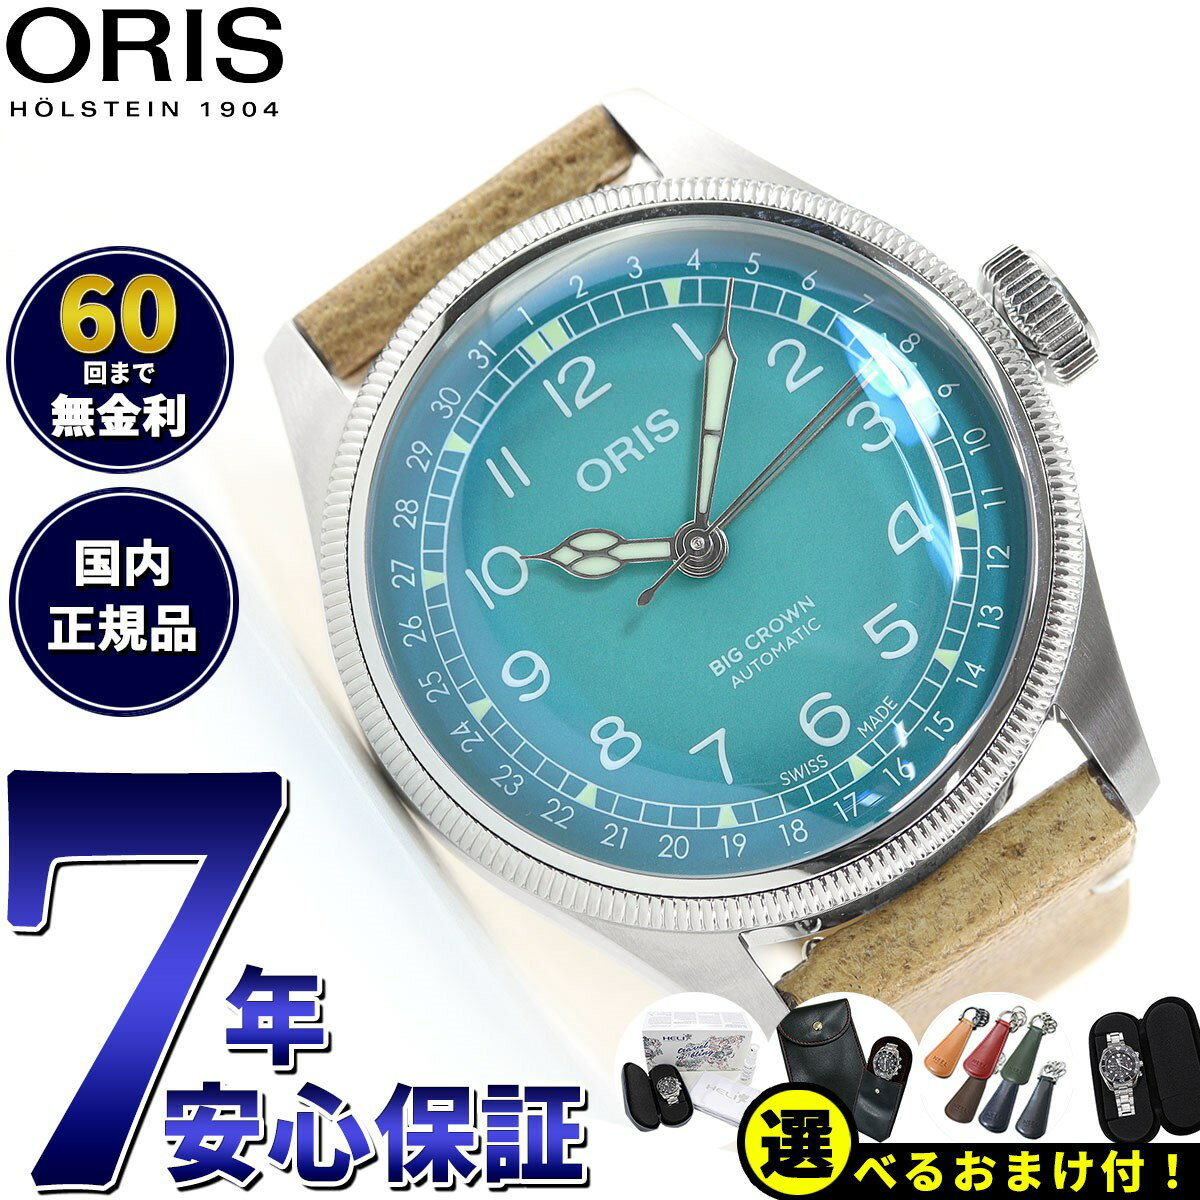 オリス ORIS ビッグクラウン ポインターデイト チェルボボランテ BIG CROWN 腕時計 メンズ 自動巻き 01 754 7779 4065-Set